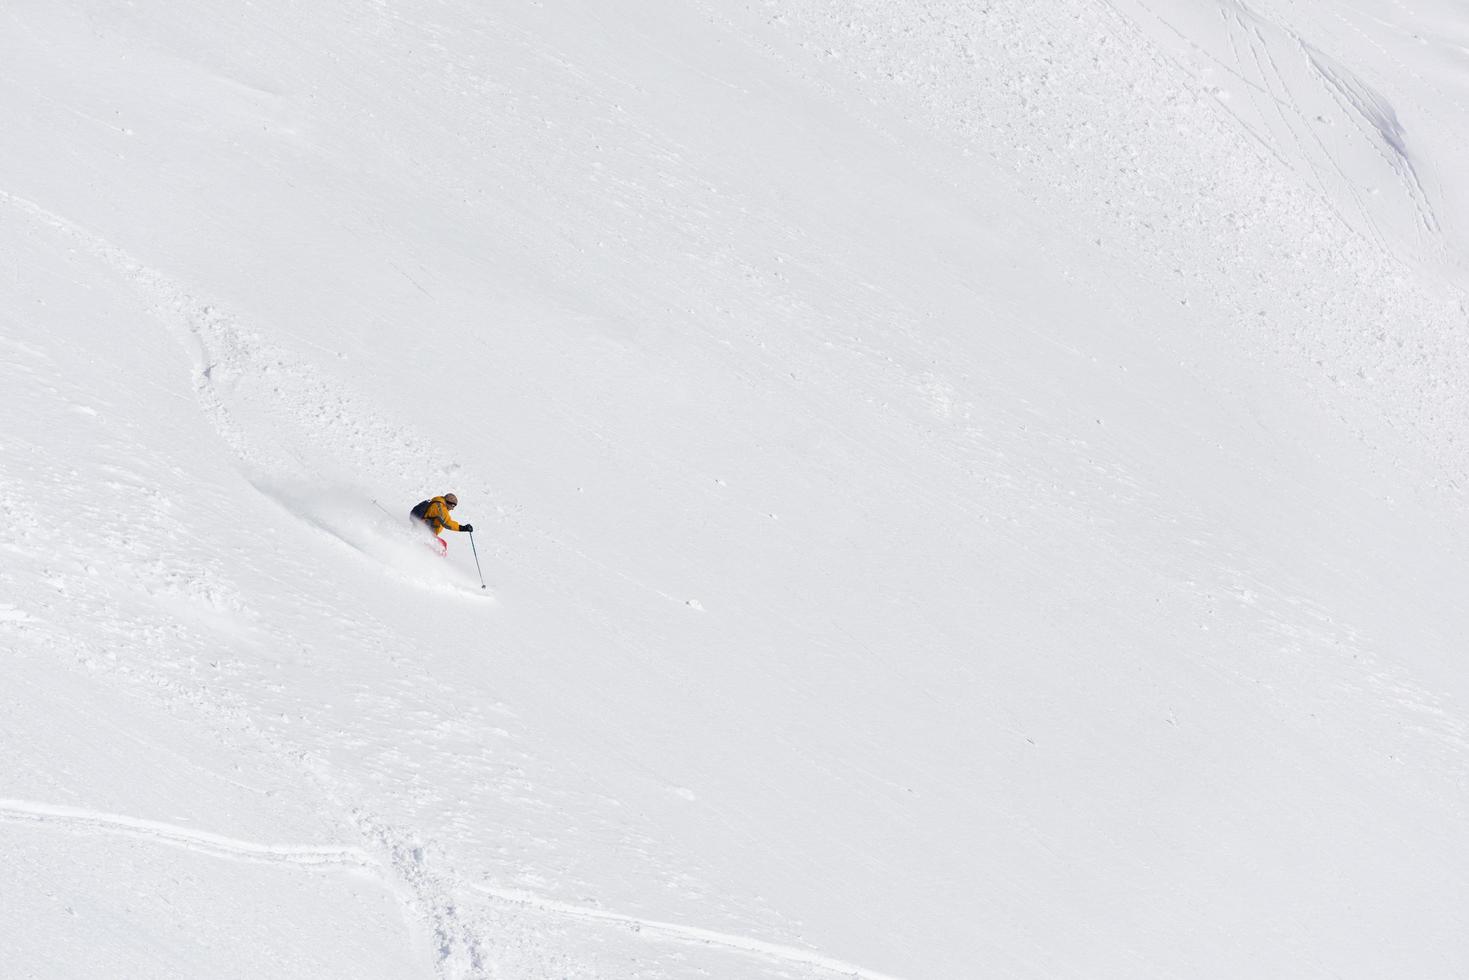 freeride skidåkare i djup pudersnö foto